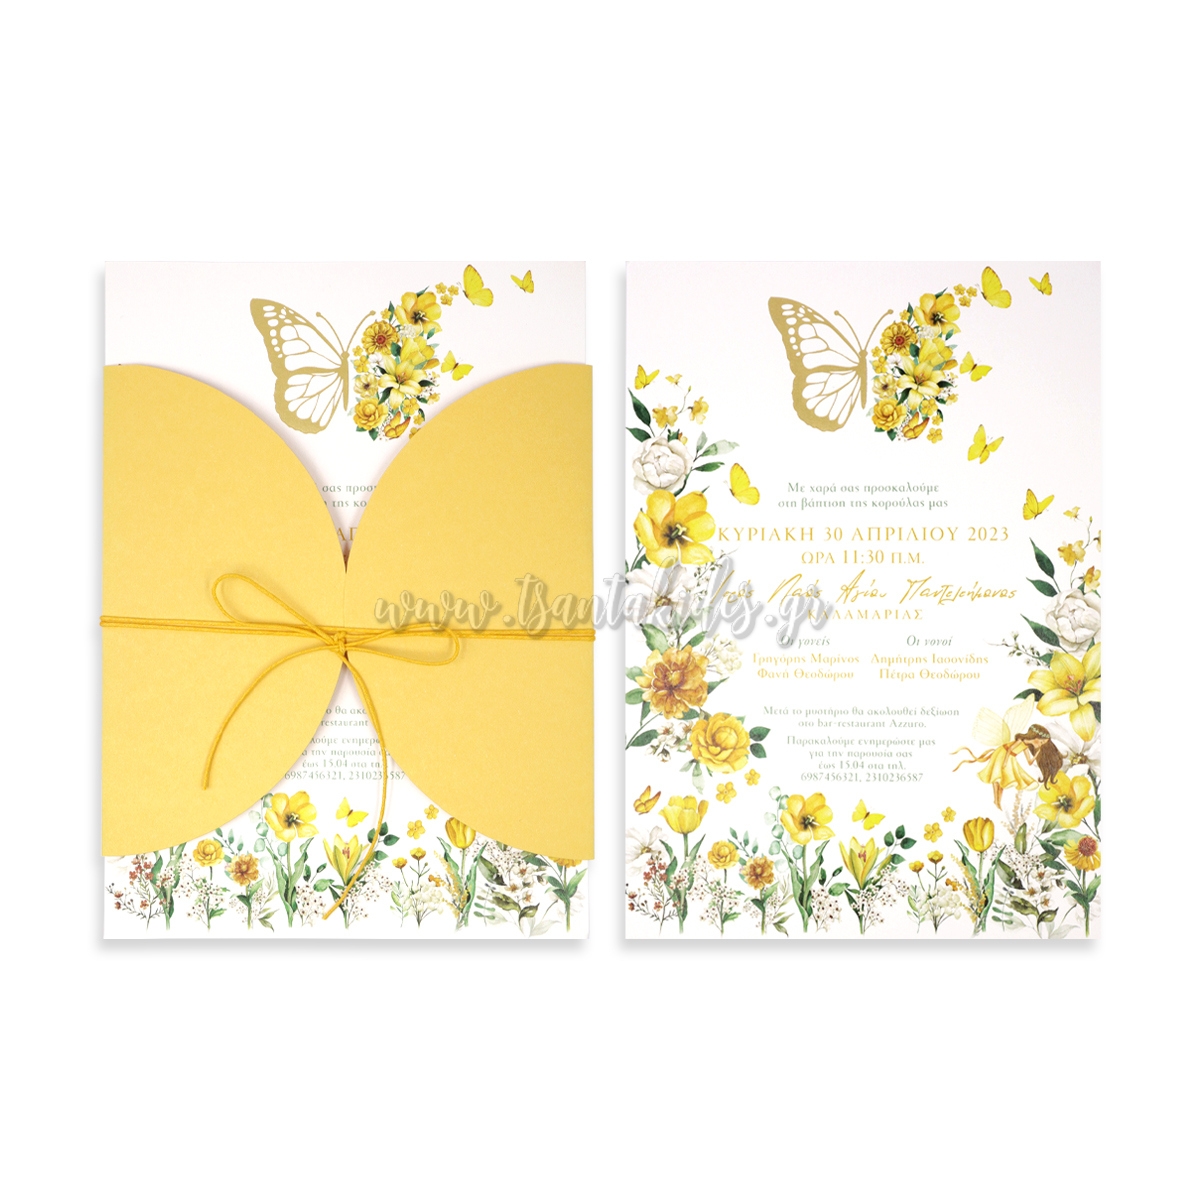 προσκλητήριο βάπτισης κορίτσι πεταλούδα λουλούδια χρυσό κίτρινο χρυσοτυπία μεταλλοτυπία άνοιξη καλοκαίρι νεράιδα : 1